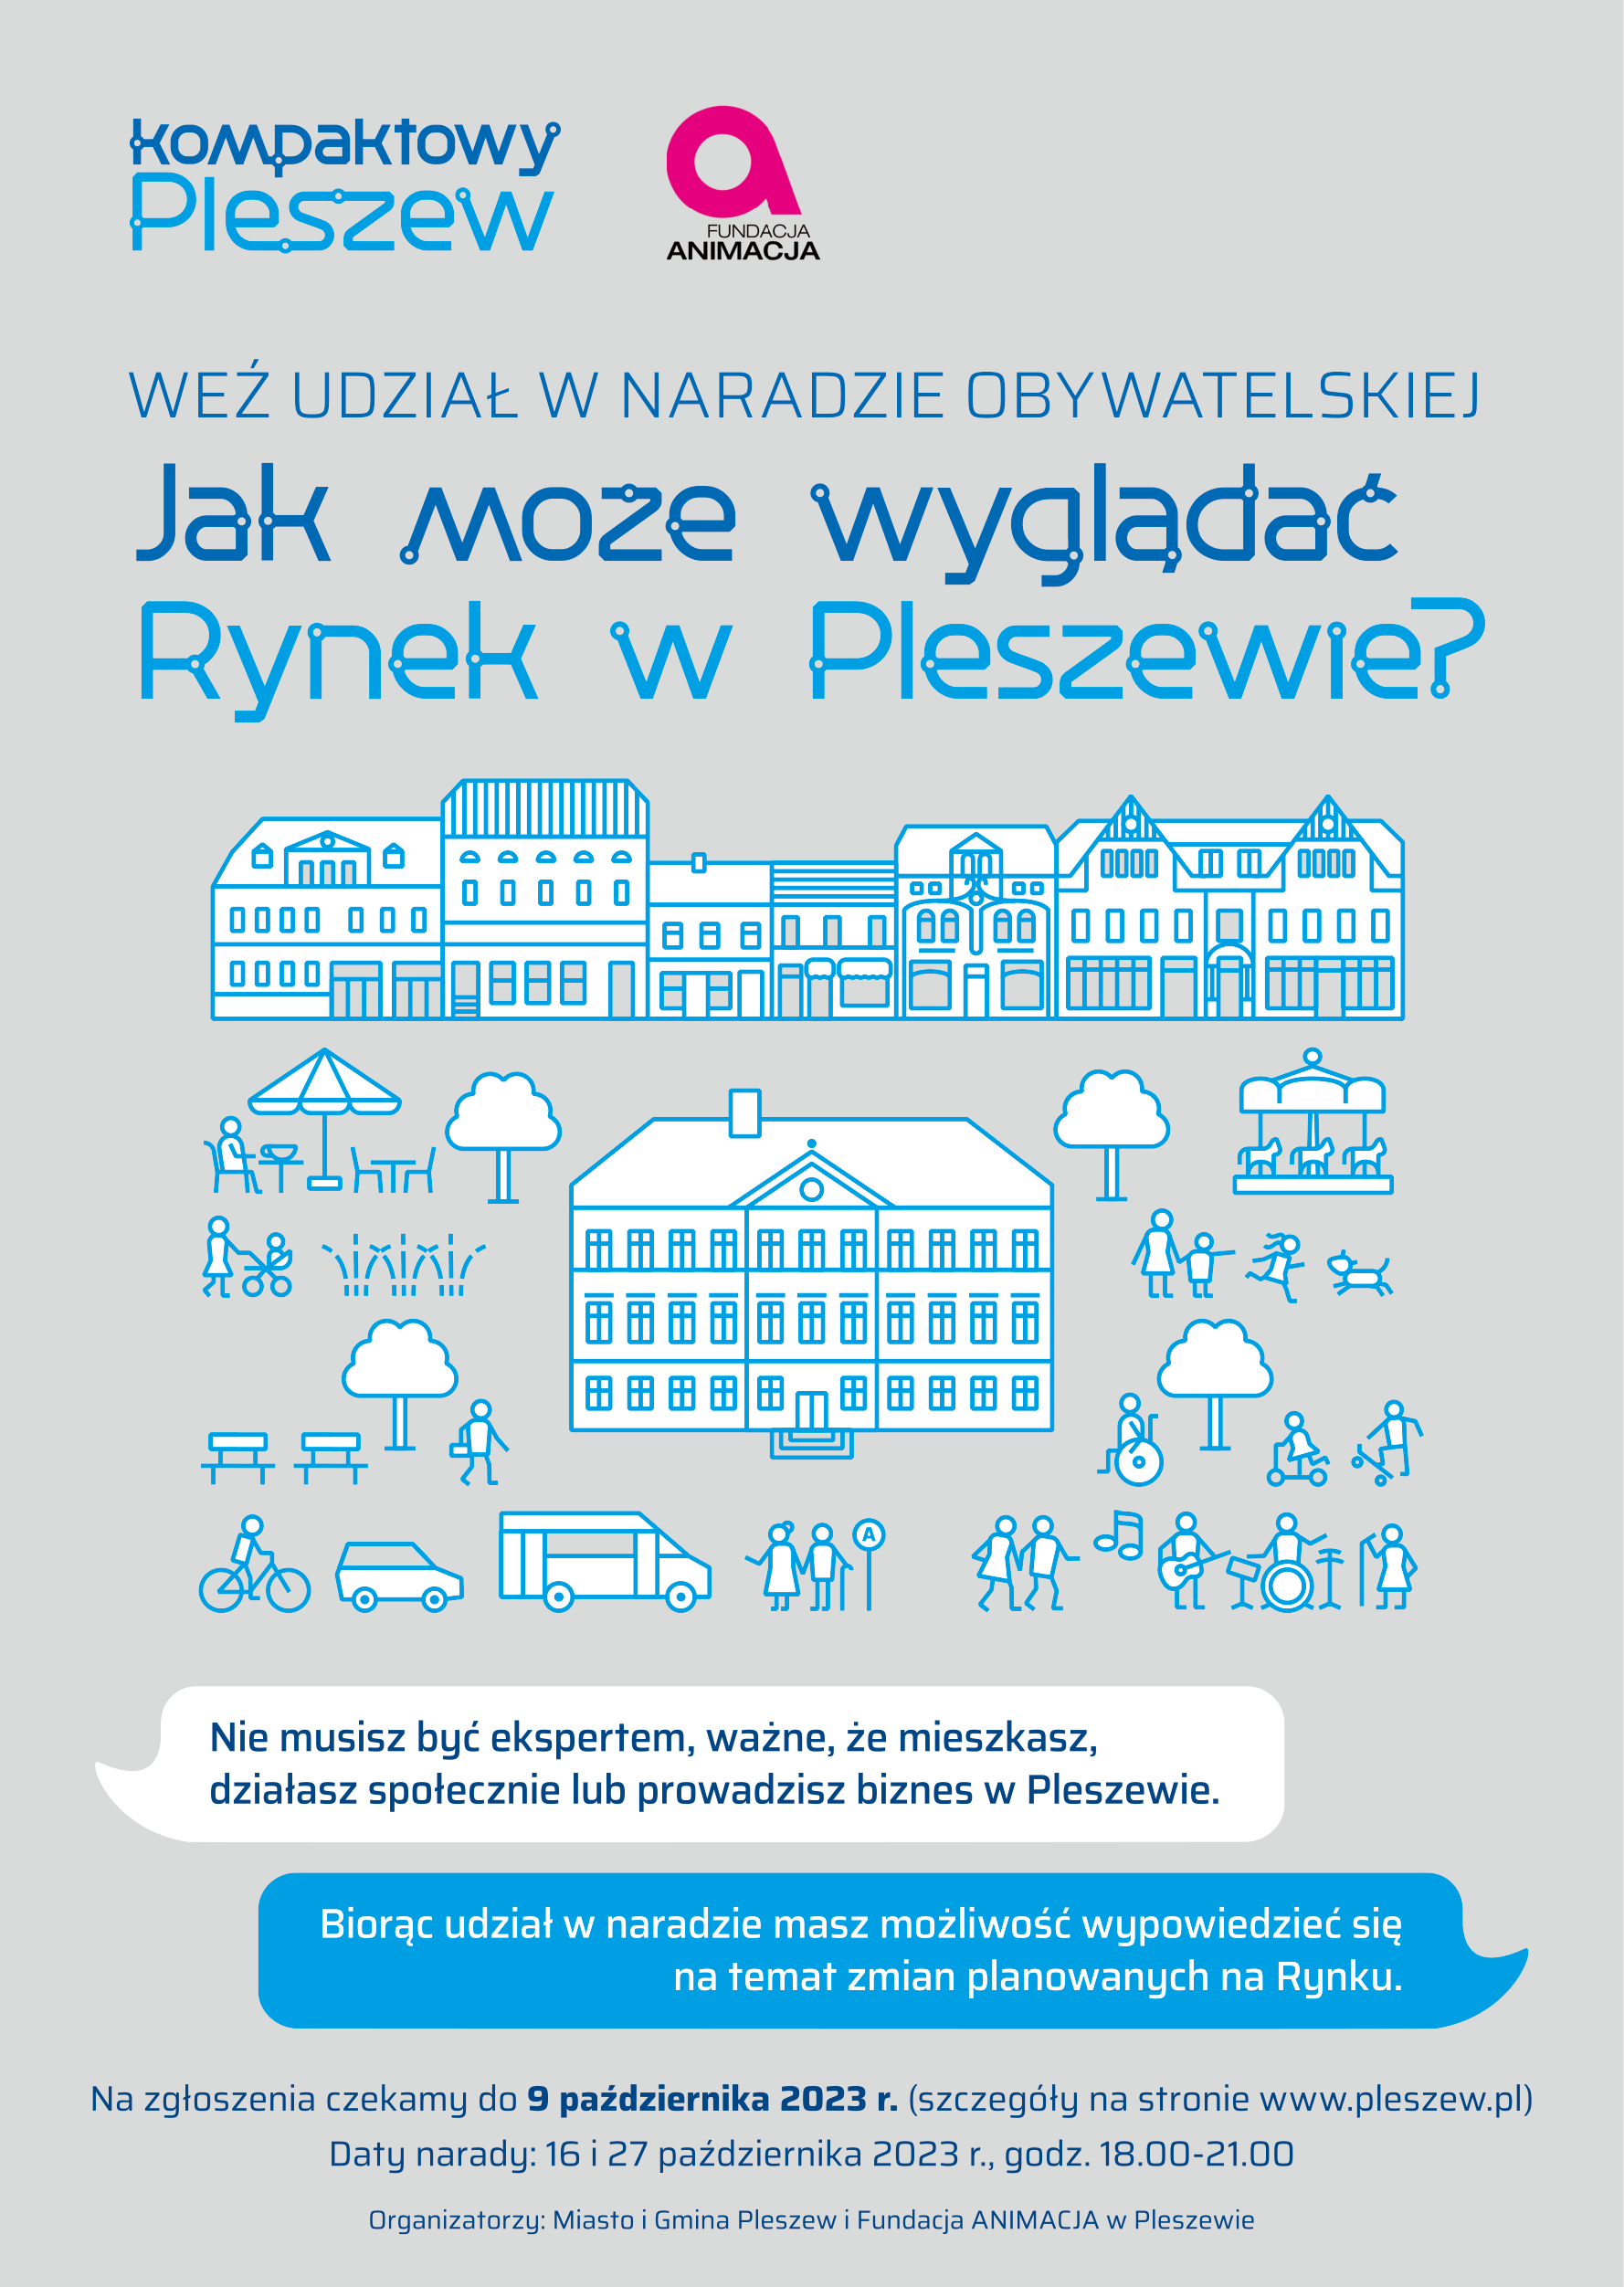 Plakat narady obywatelskiej dotyczącej wyglądu pleszewskiego Rynku organizowanej 16 i 27 października 2023 r. w CWIO w Pleszewie.